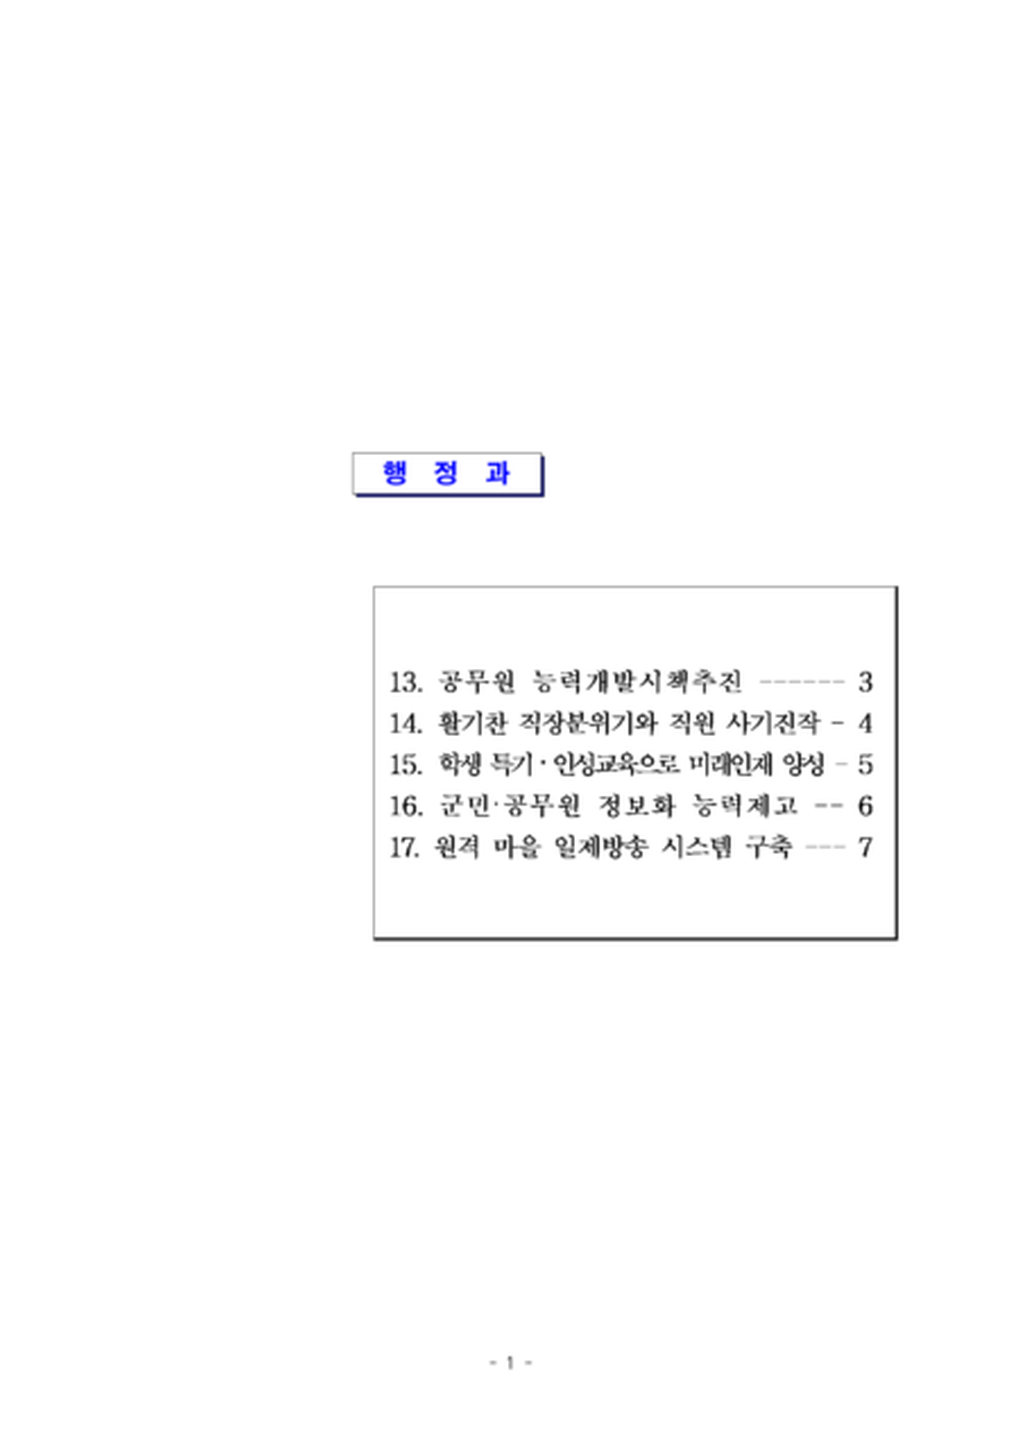 2013년도 프랜드(79)시책_행정과